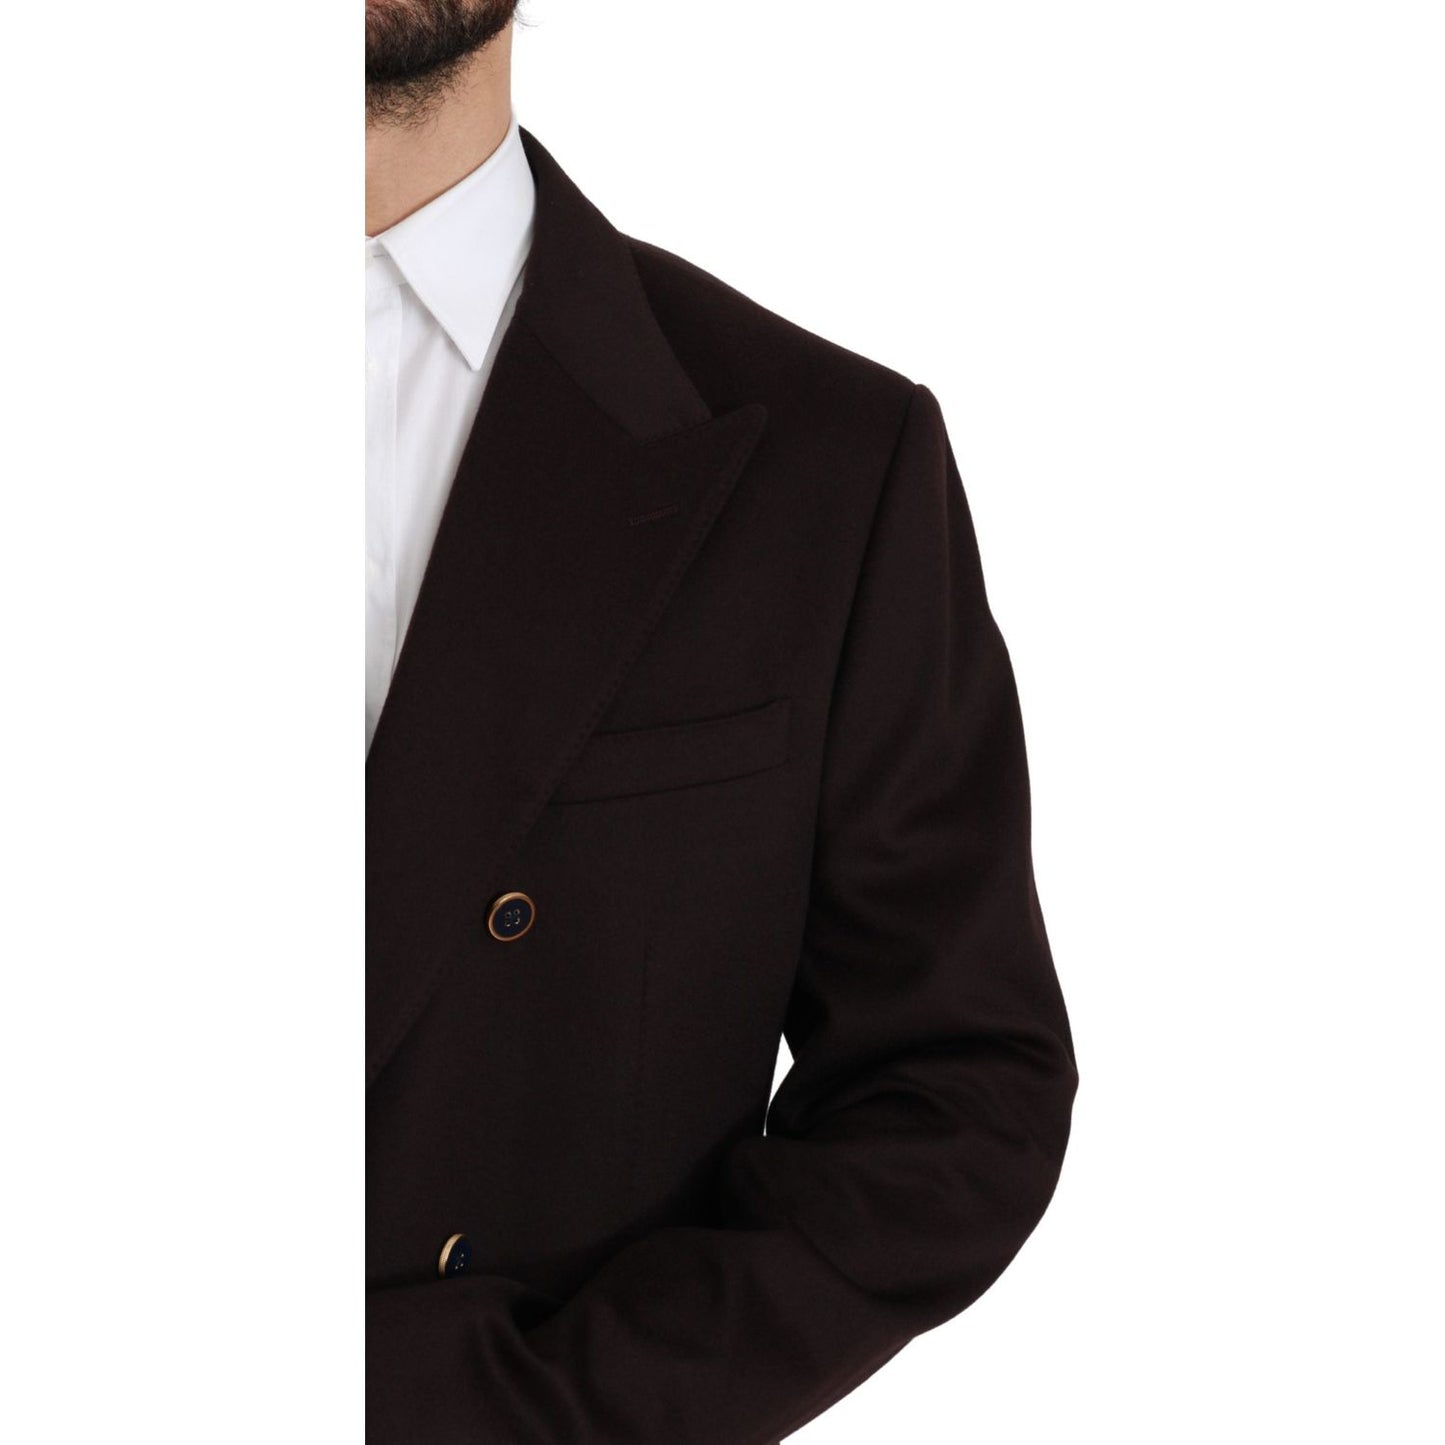 Dolce & Gabbana Elegant Bordeaux Taormina Cashmere Blazer bordeaux-cashmere-coat-taormina-blazer